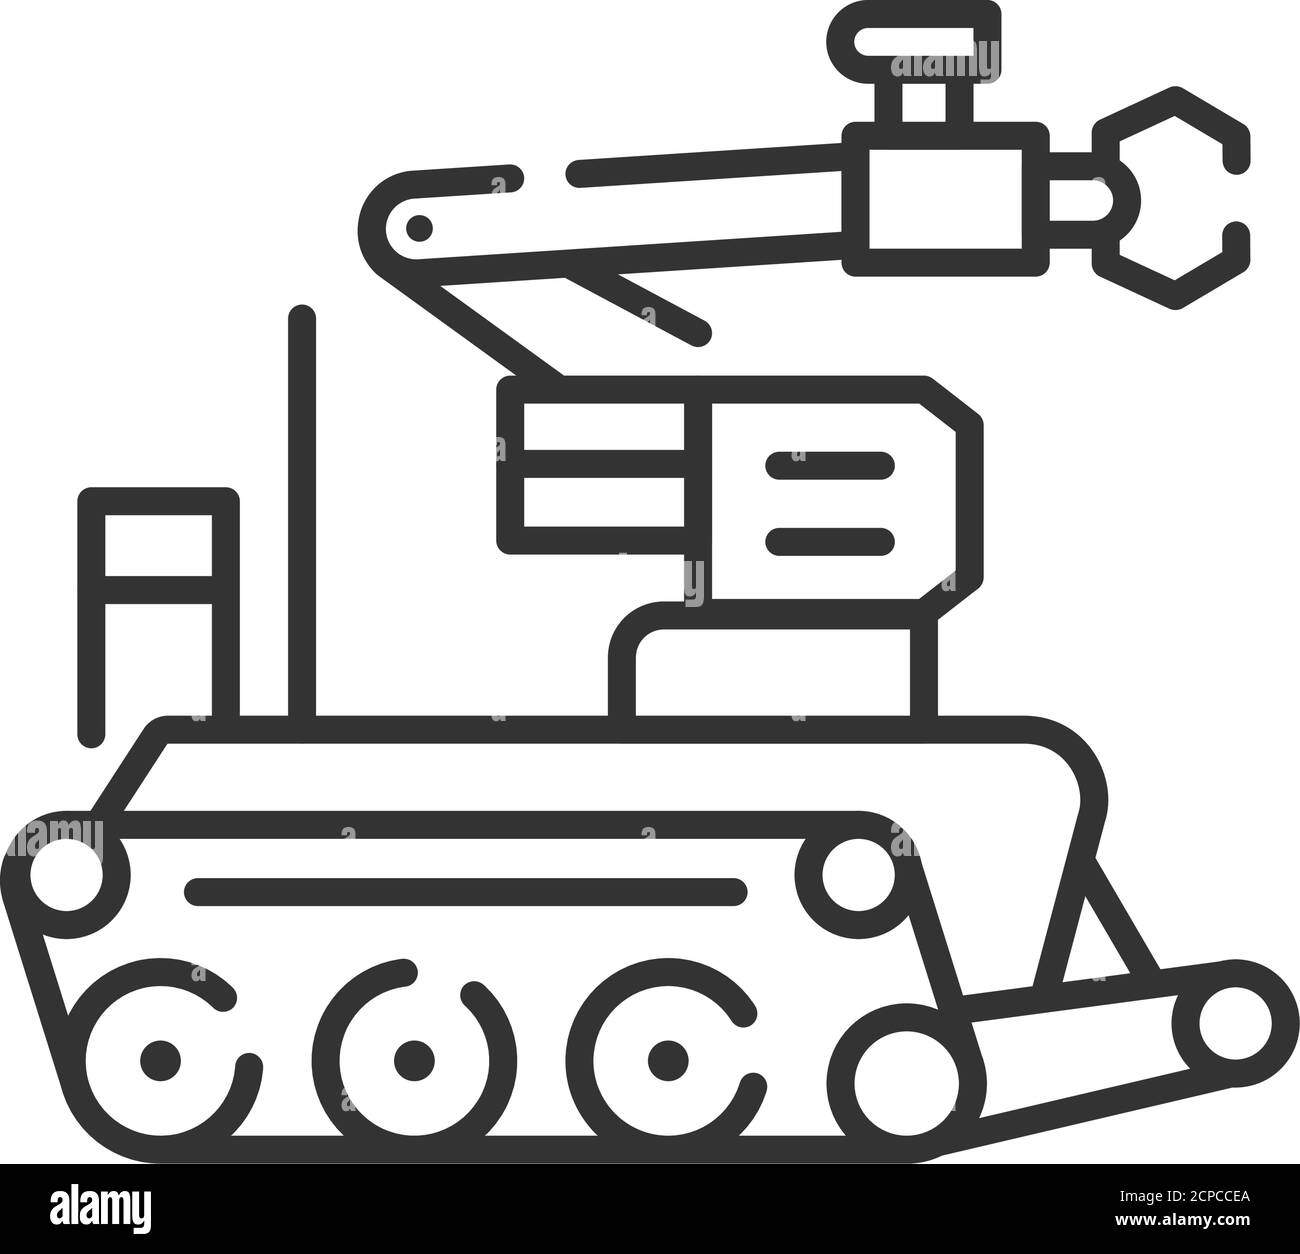 Icona della linea nera del robot militare. Robot per lo smaltimento di bombe o ordigni esplosivi EOD. Innovazione tecnologica. Firma per pagina Web, app. GUI UI UX Illustrazione Vettoriale